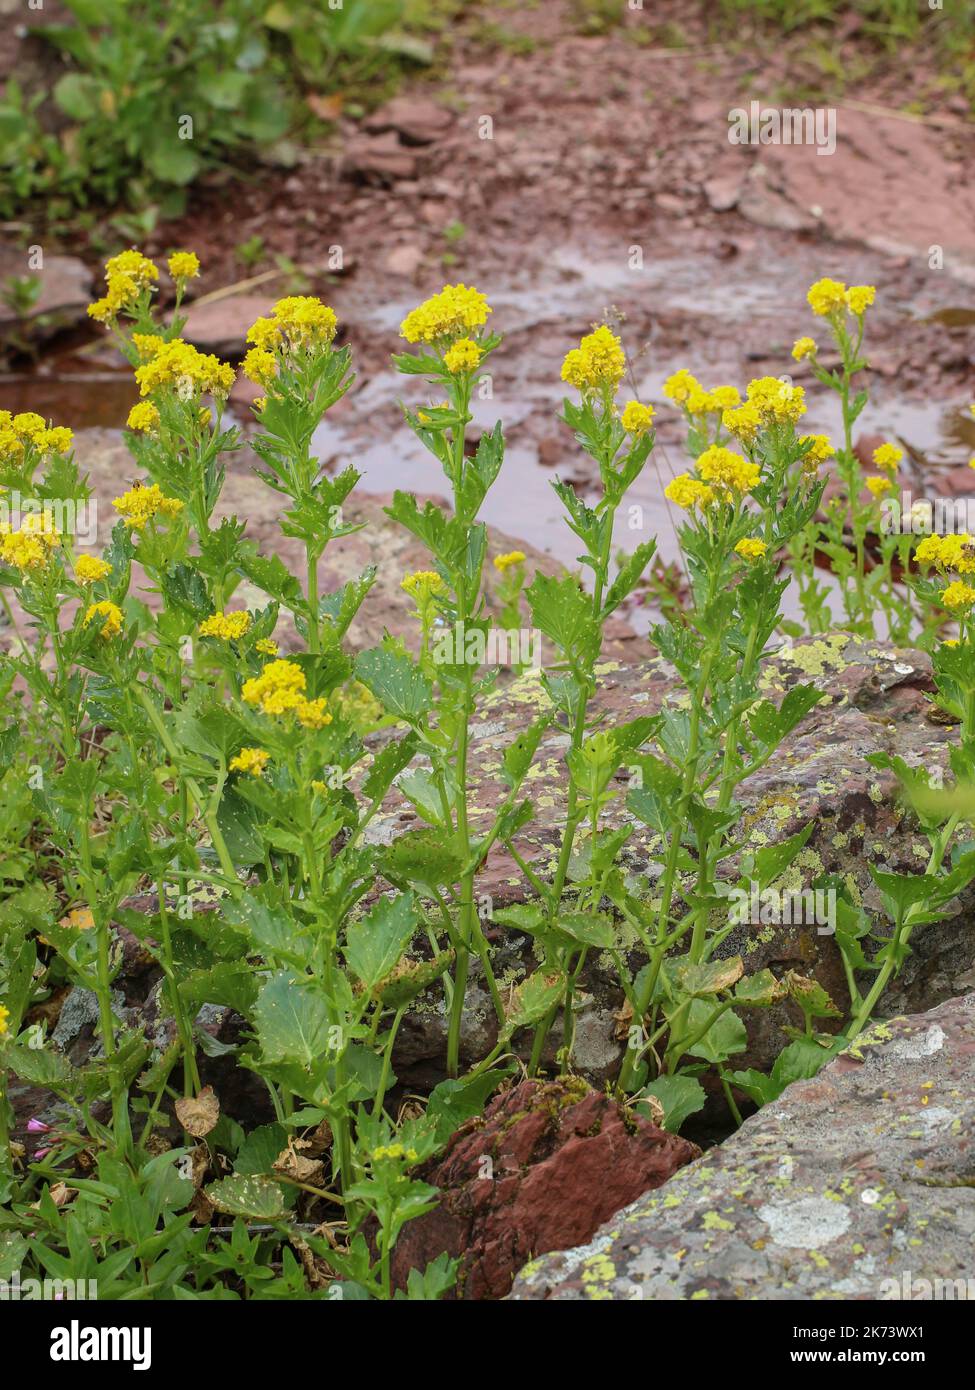 Fiori gialli del razzo giallo balcanico (nome latino: Barbarea balcana) nel parco naturale Stara planina nella Serbia orientale Foto Stock